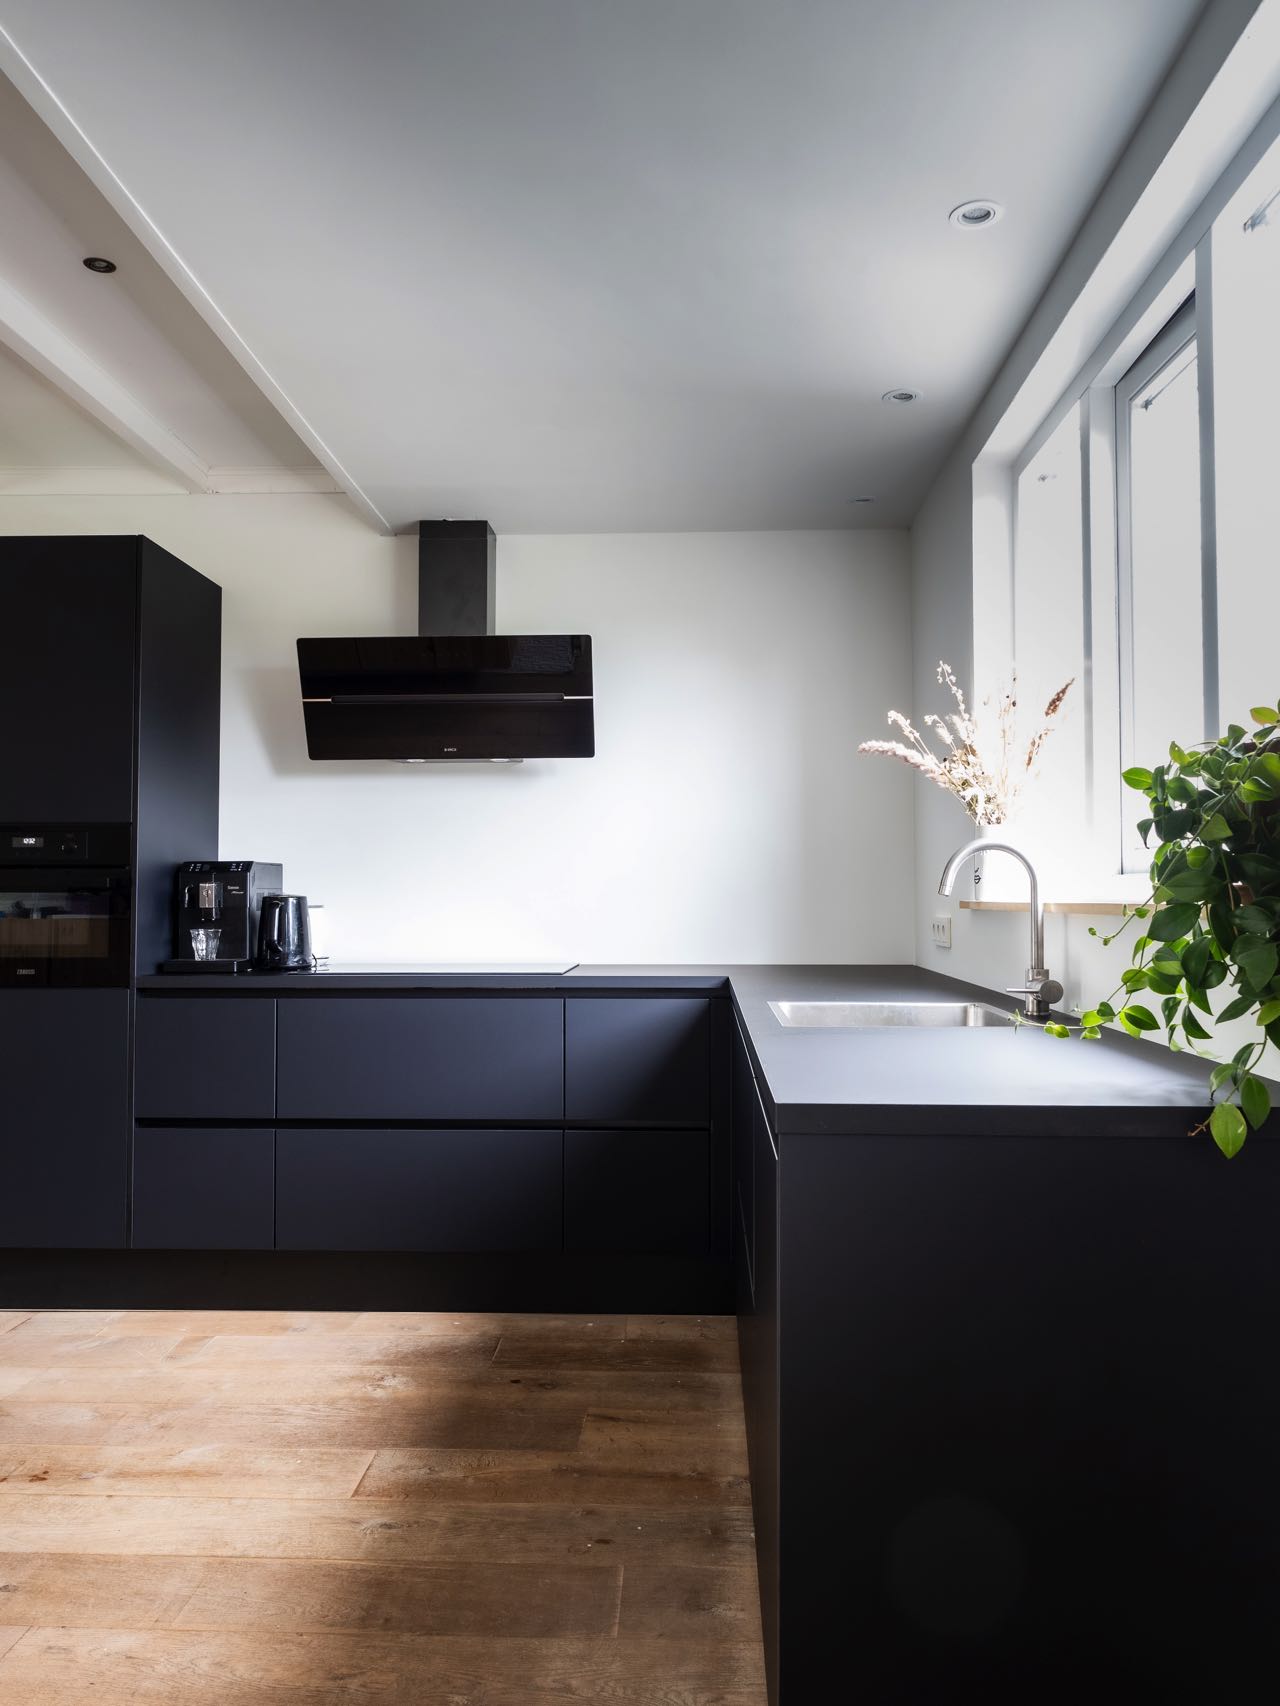 Die vollkommen in Mattschwarz gehaltene grifflose Küche, ergänzt durch eine kopffreie Dunstabzugshaube und akzentuiert durch passende schwarze Küchengeräte, verkörpert minimalistische Eleganz in seiner reinsten Form.